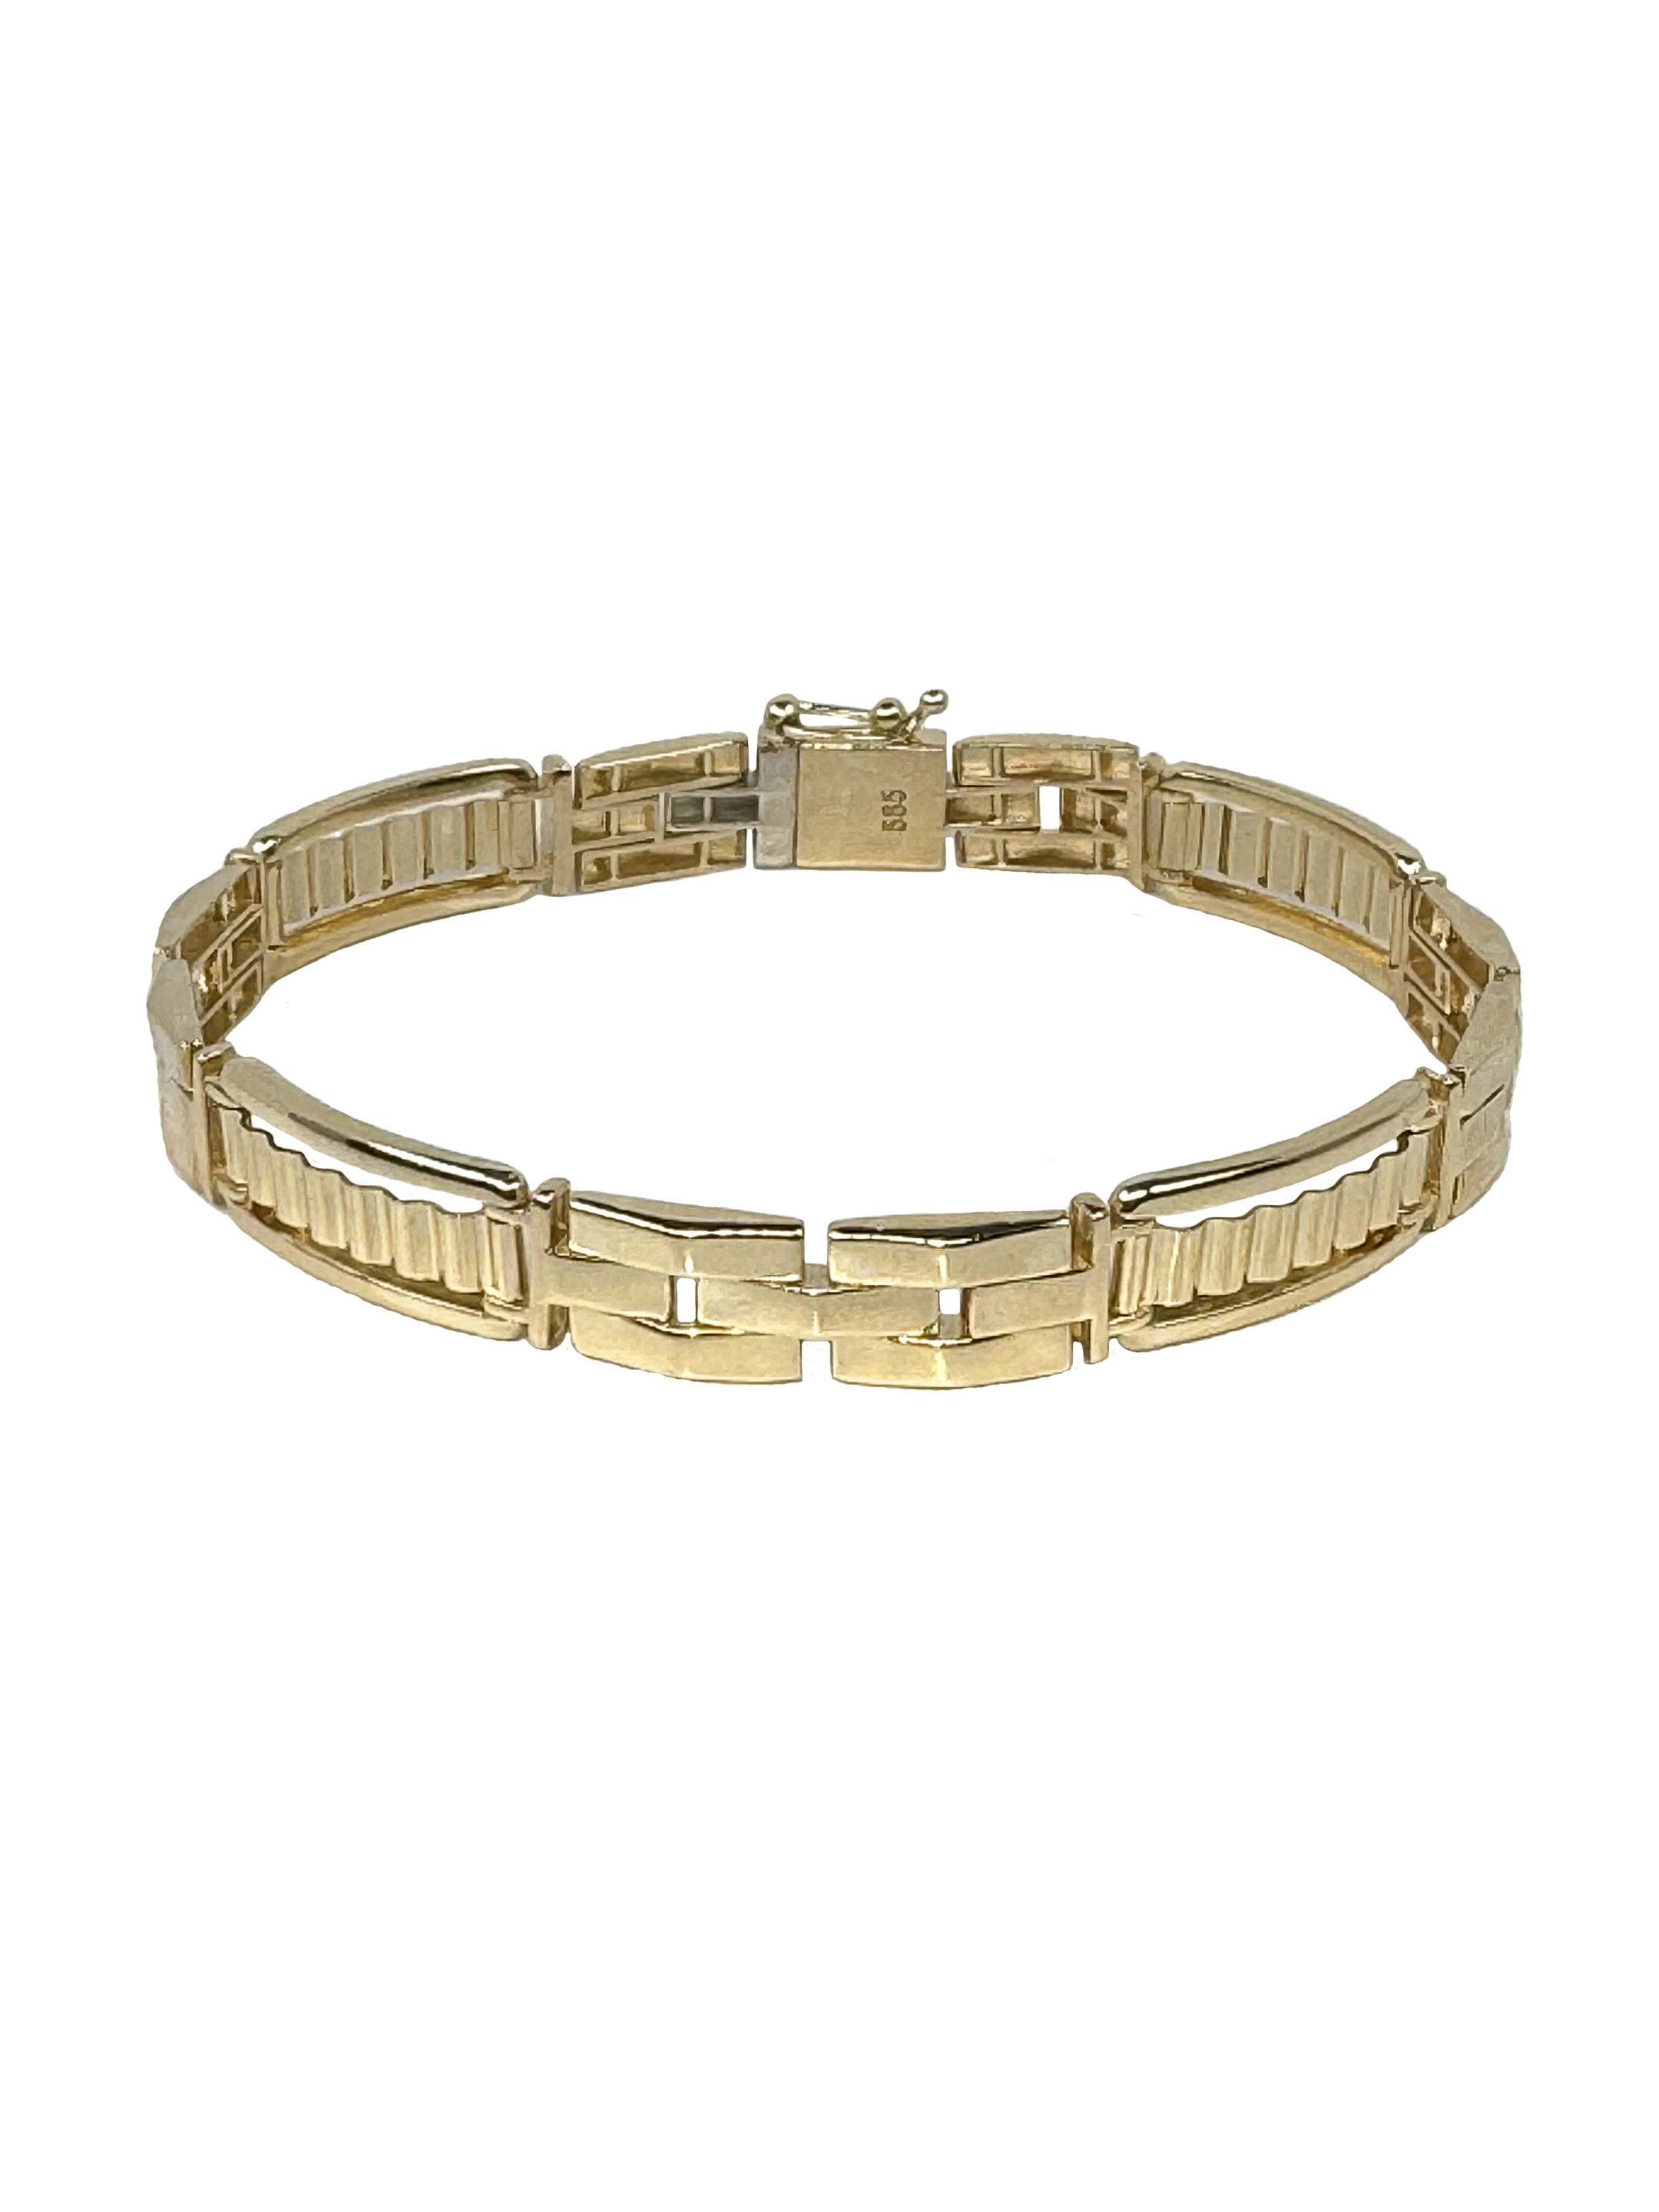 Solid gold men's solid bracelet